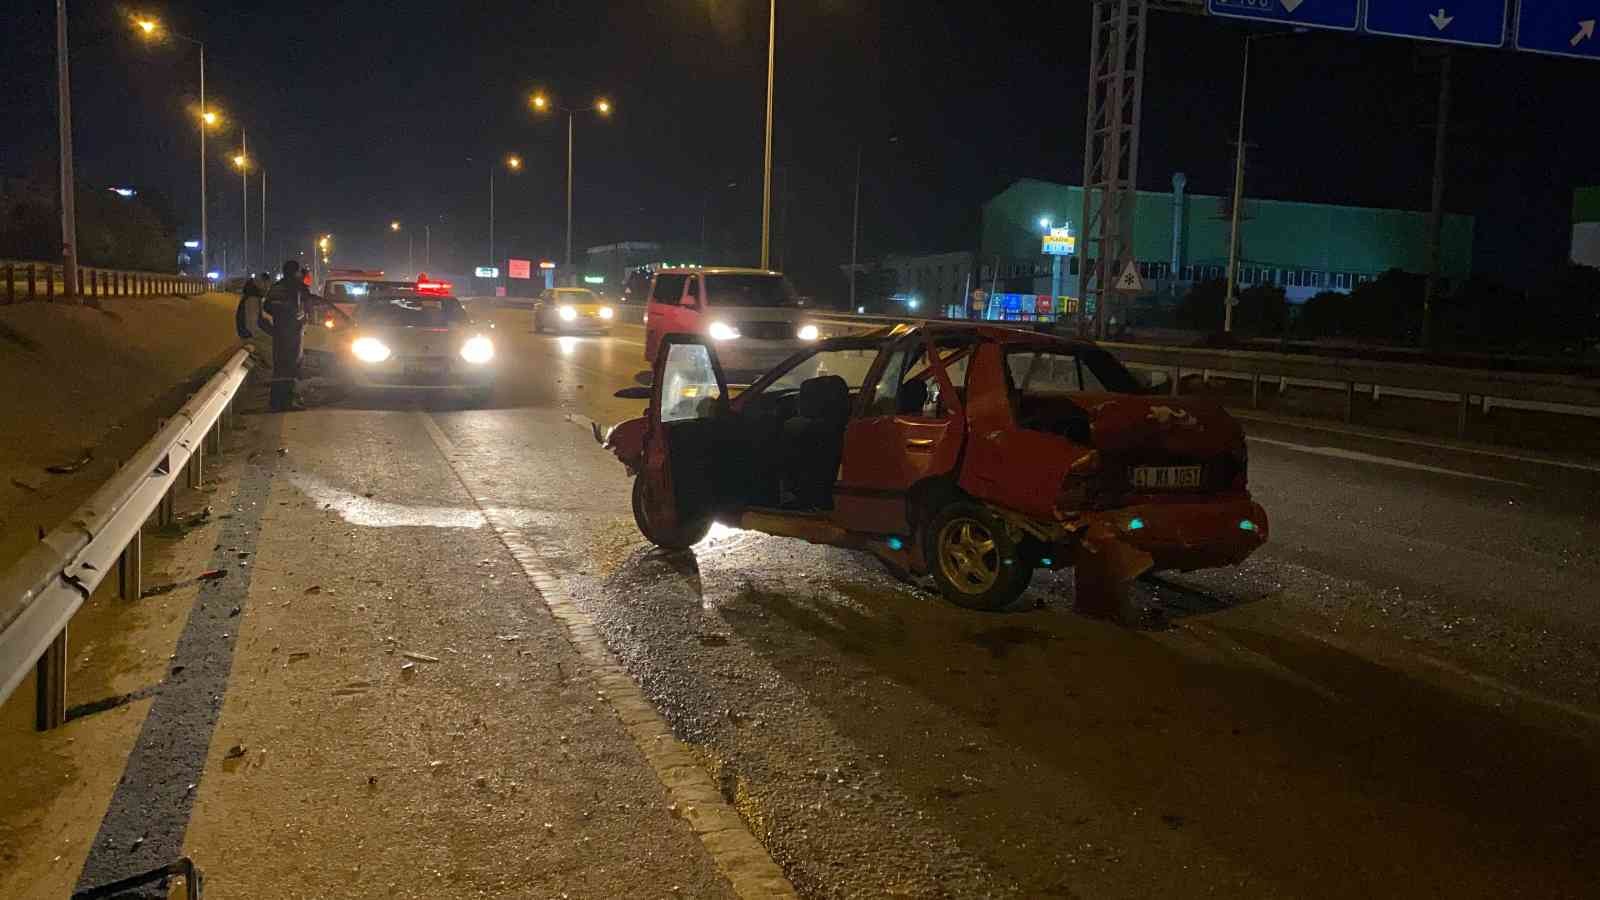 D-100’de bariyere çarpan otomobildeki 5 kişi yaralandı #kocaeli